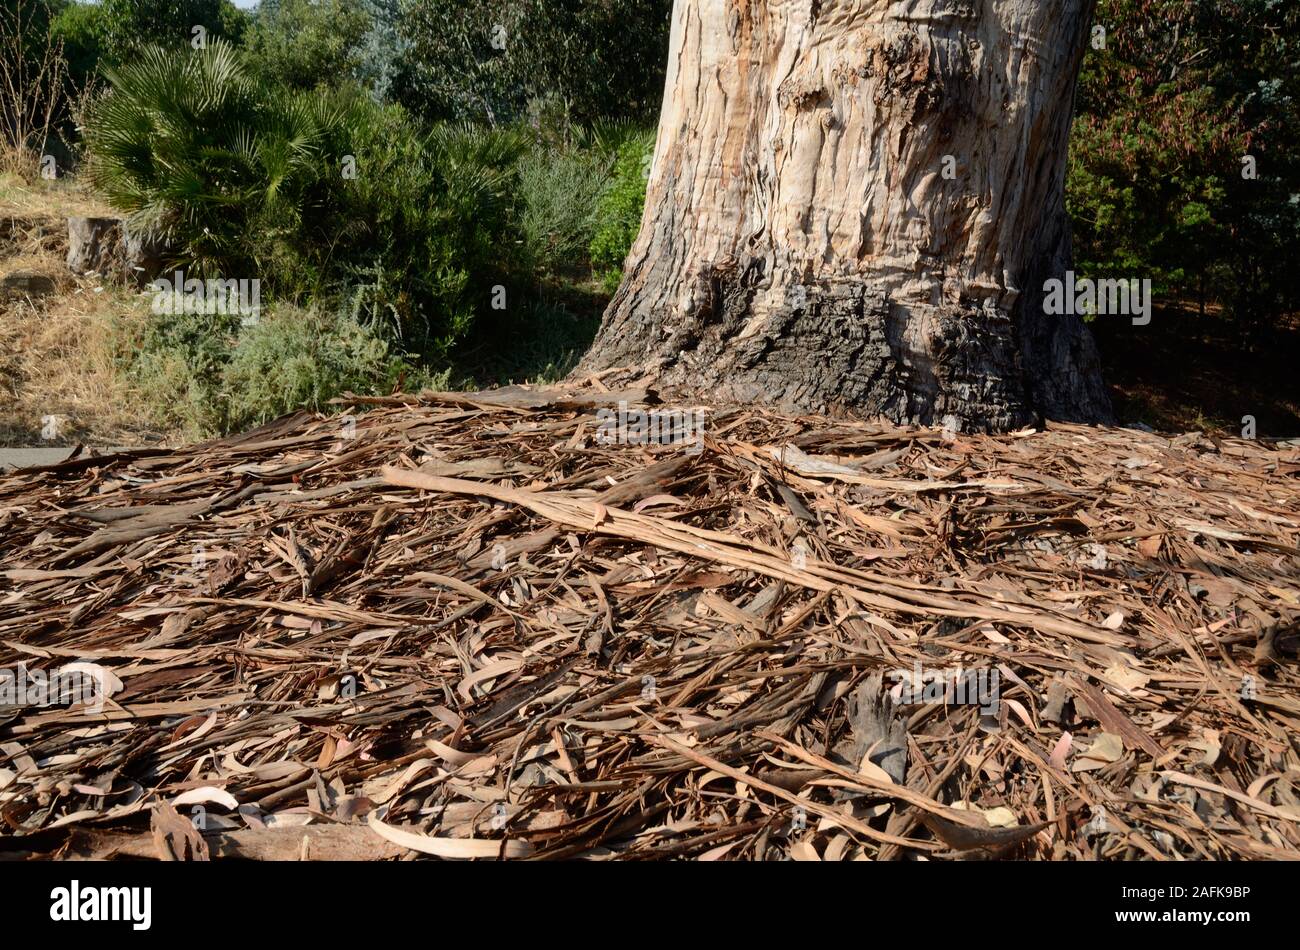 Corteccia di eucalipto struttura robusta e litterfall, lettiera vegetale, figliata di albero, impianti di detriti o residui di corteccia sul suolo della foresta. Foto Stock